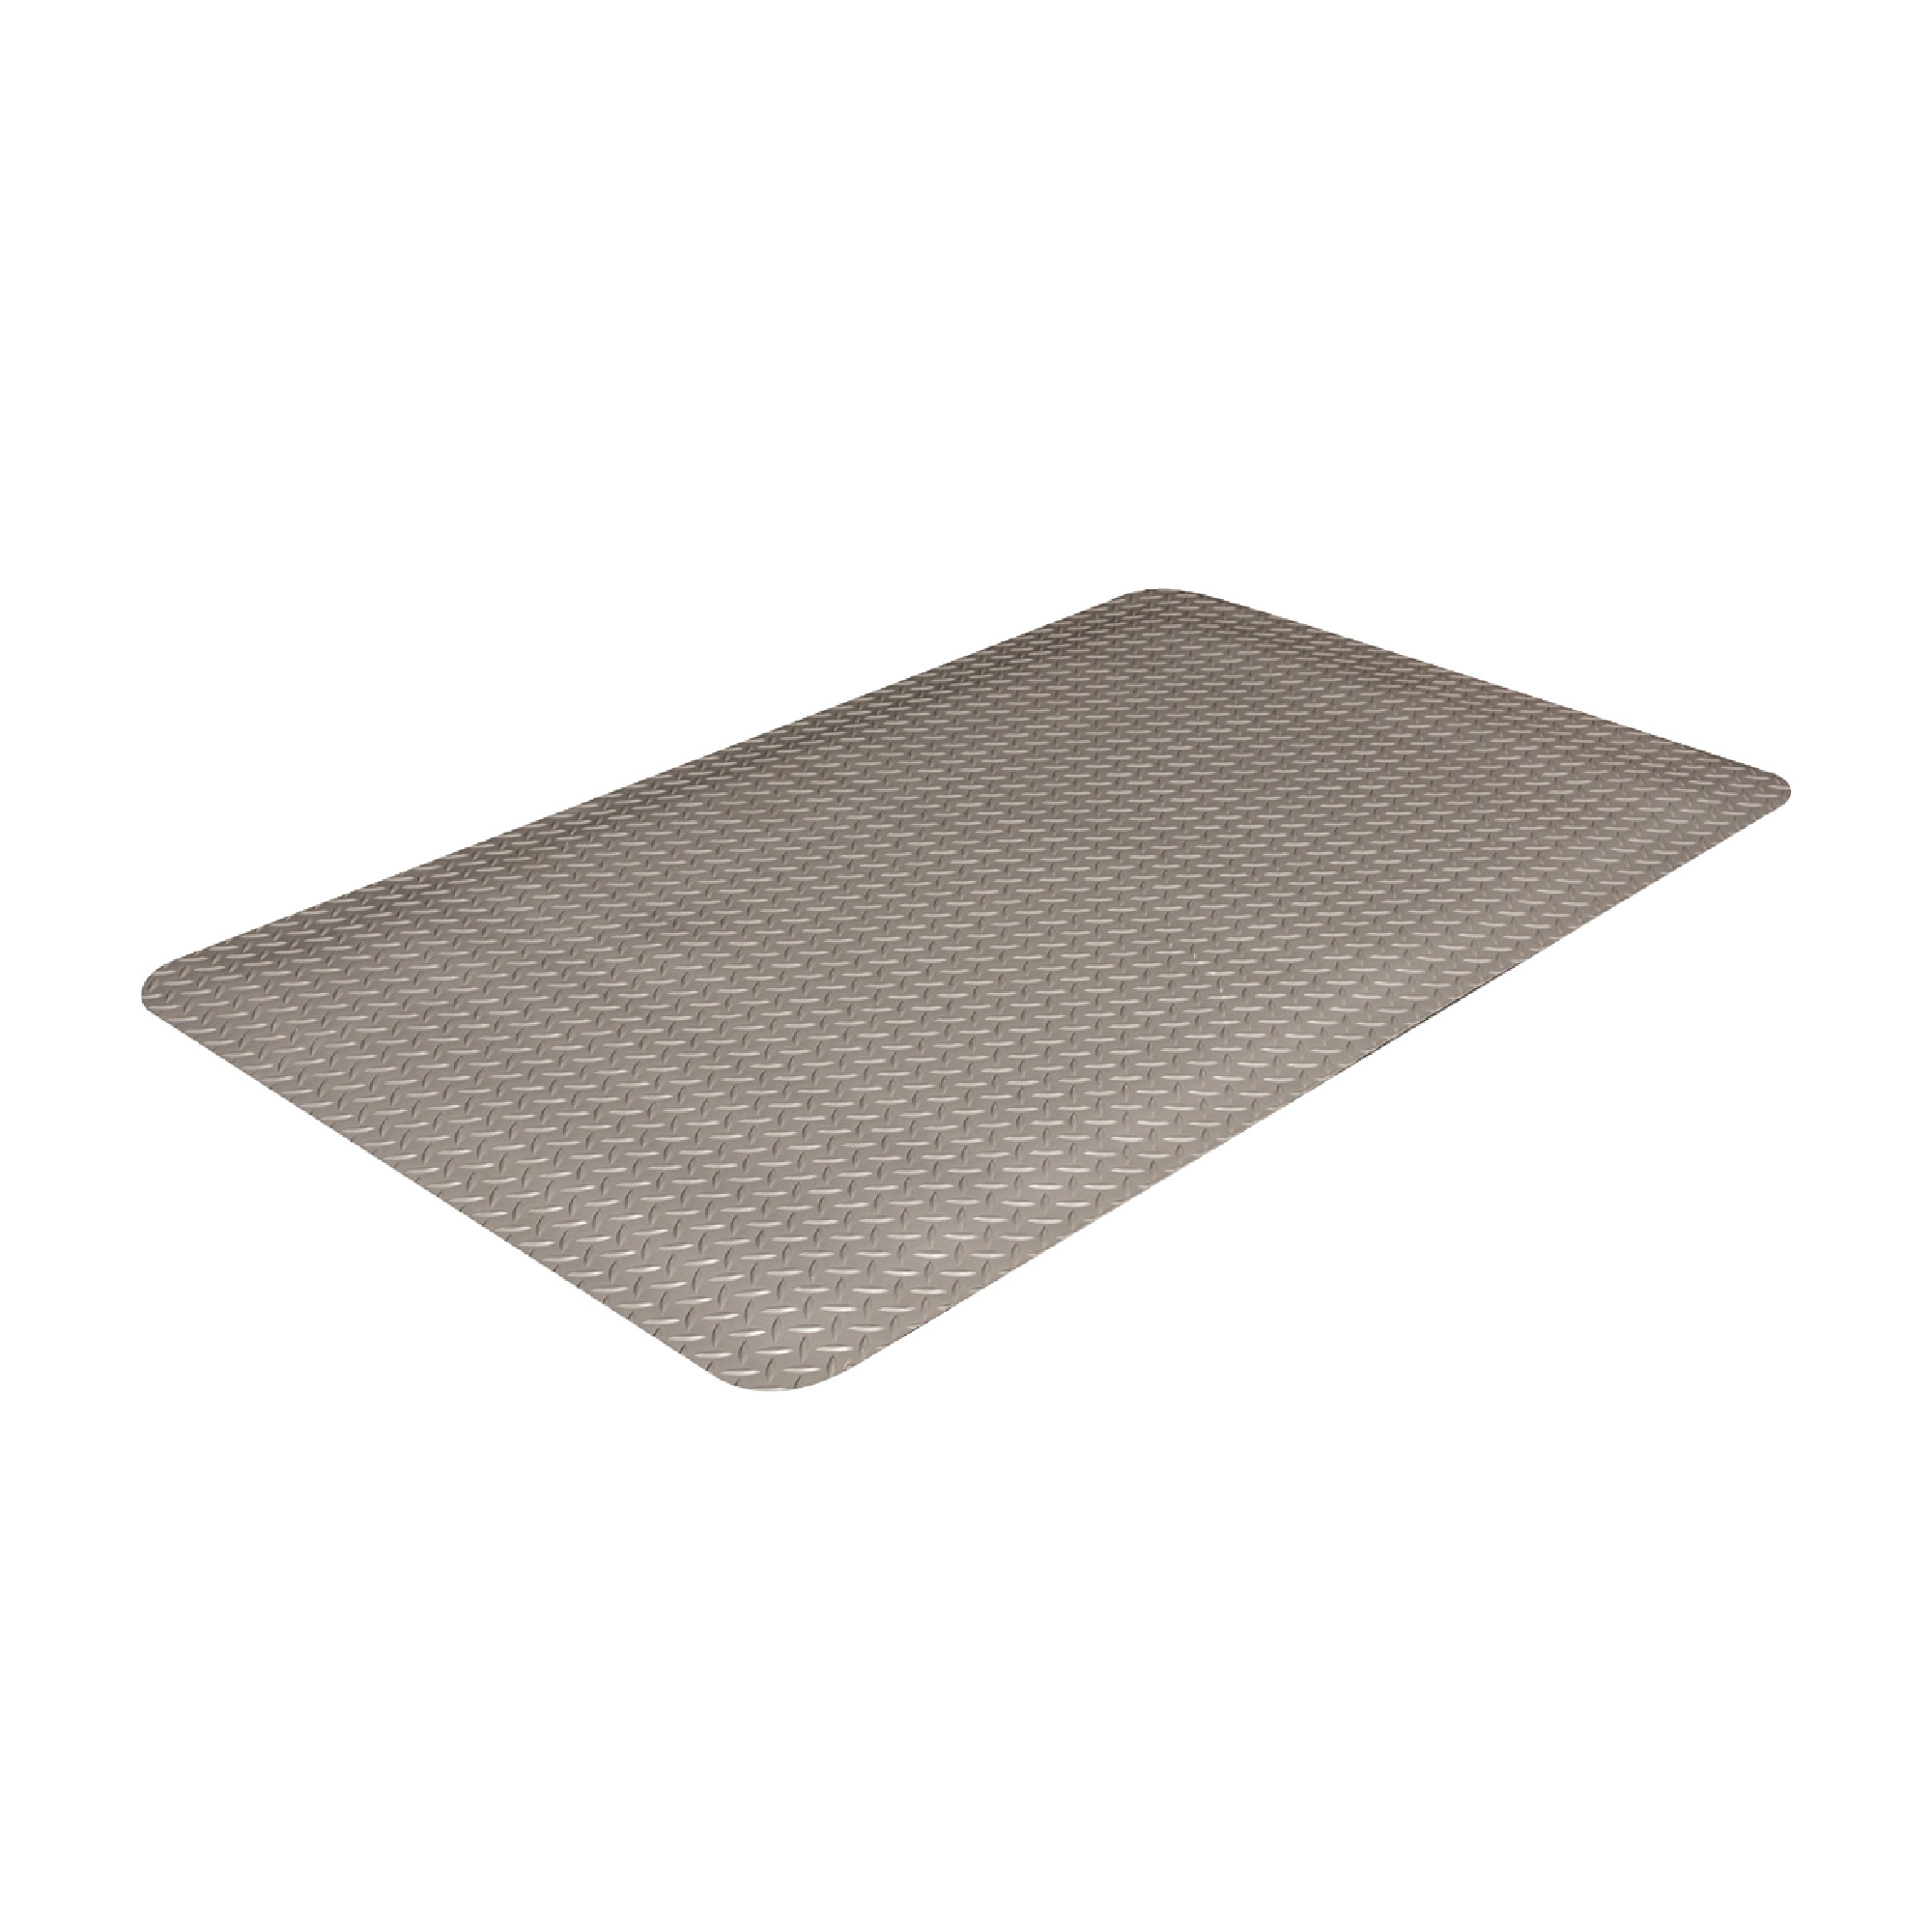 Industrial Deck Plate #500 Mat